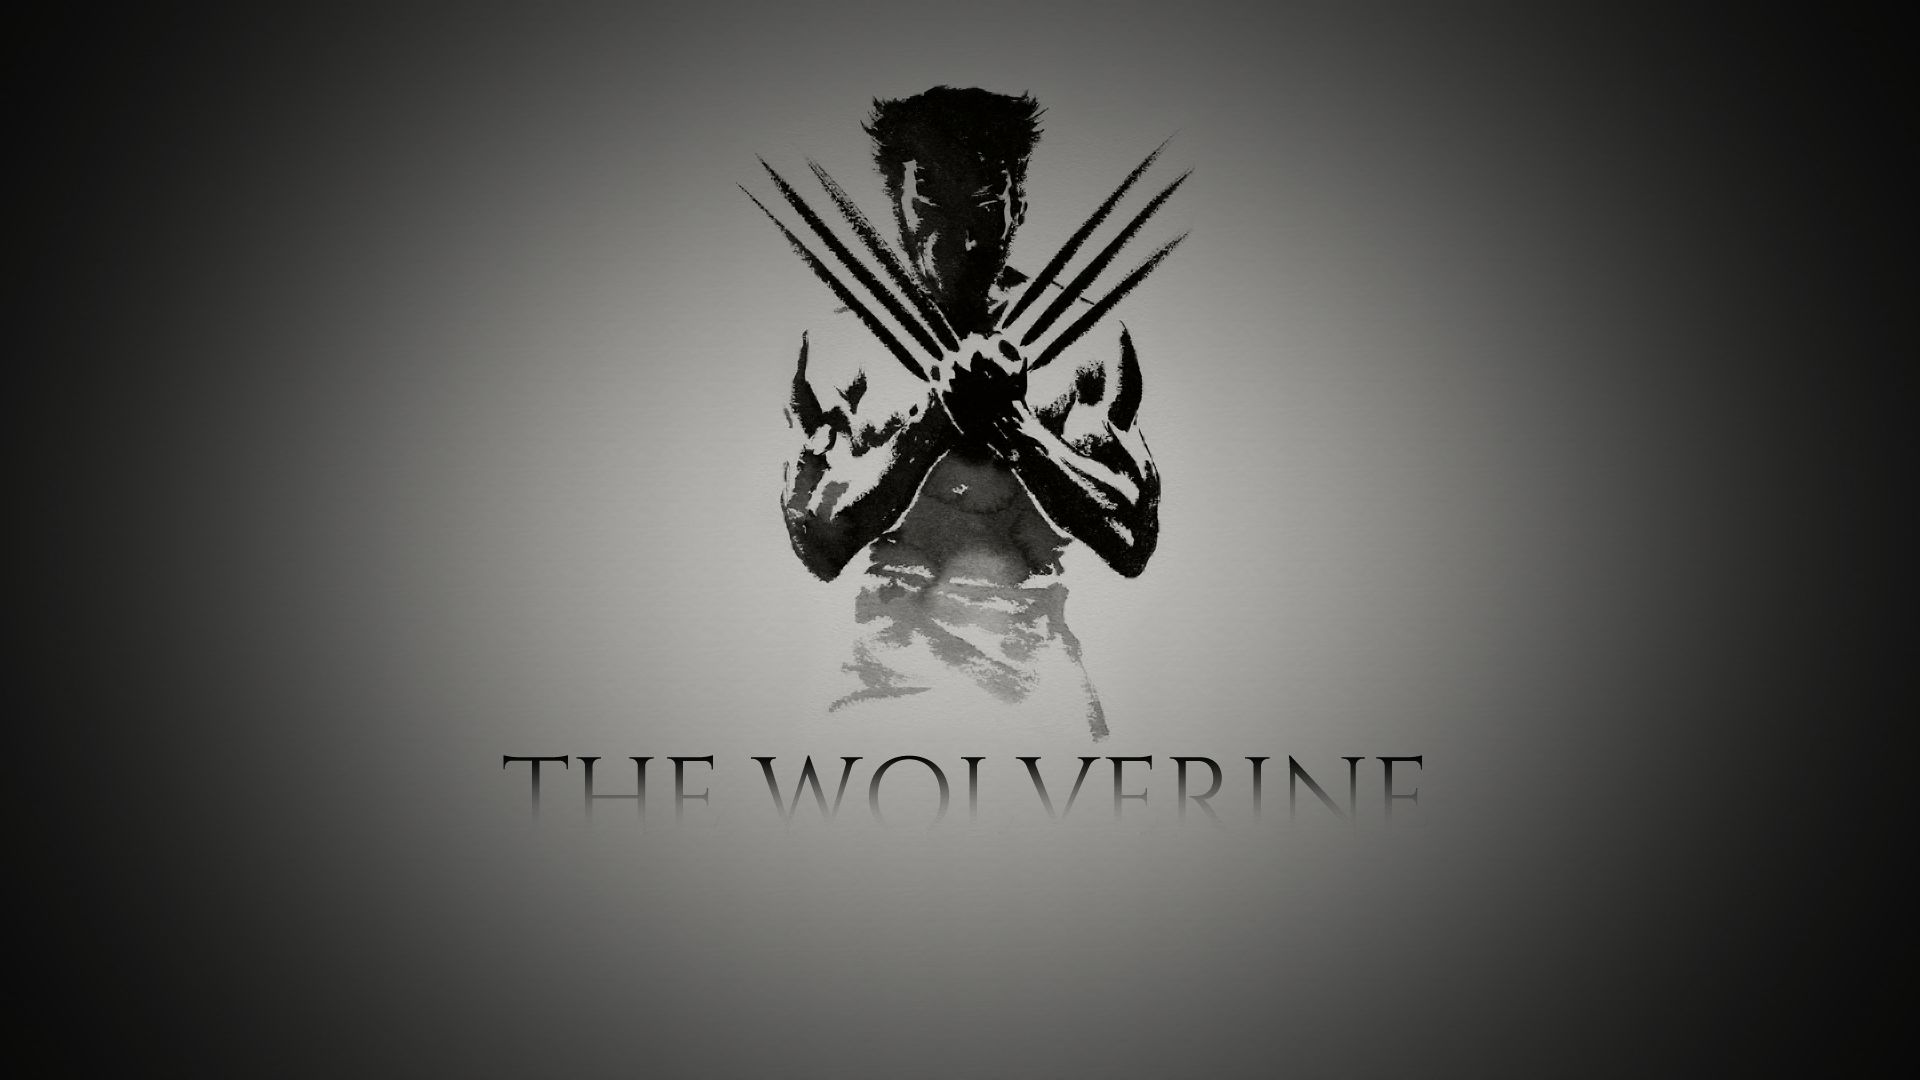 x men, the wolverine, movie